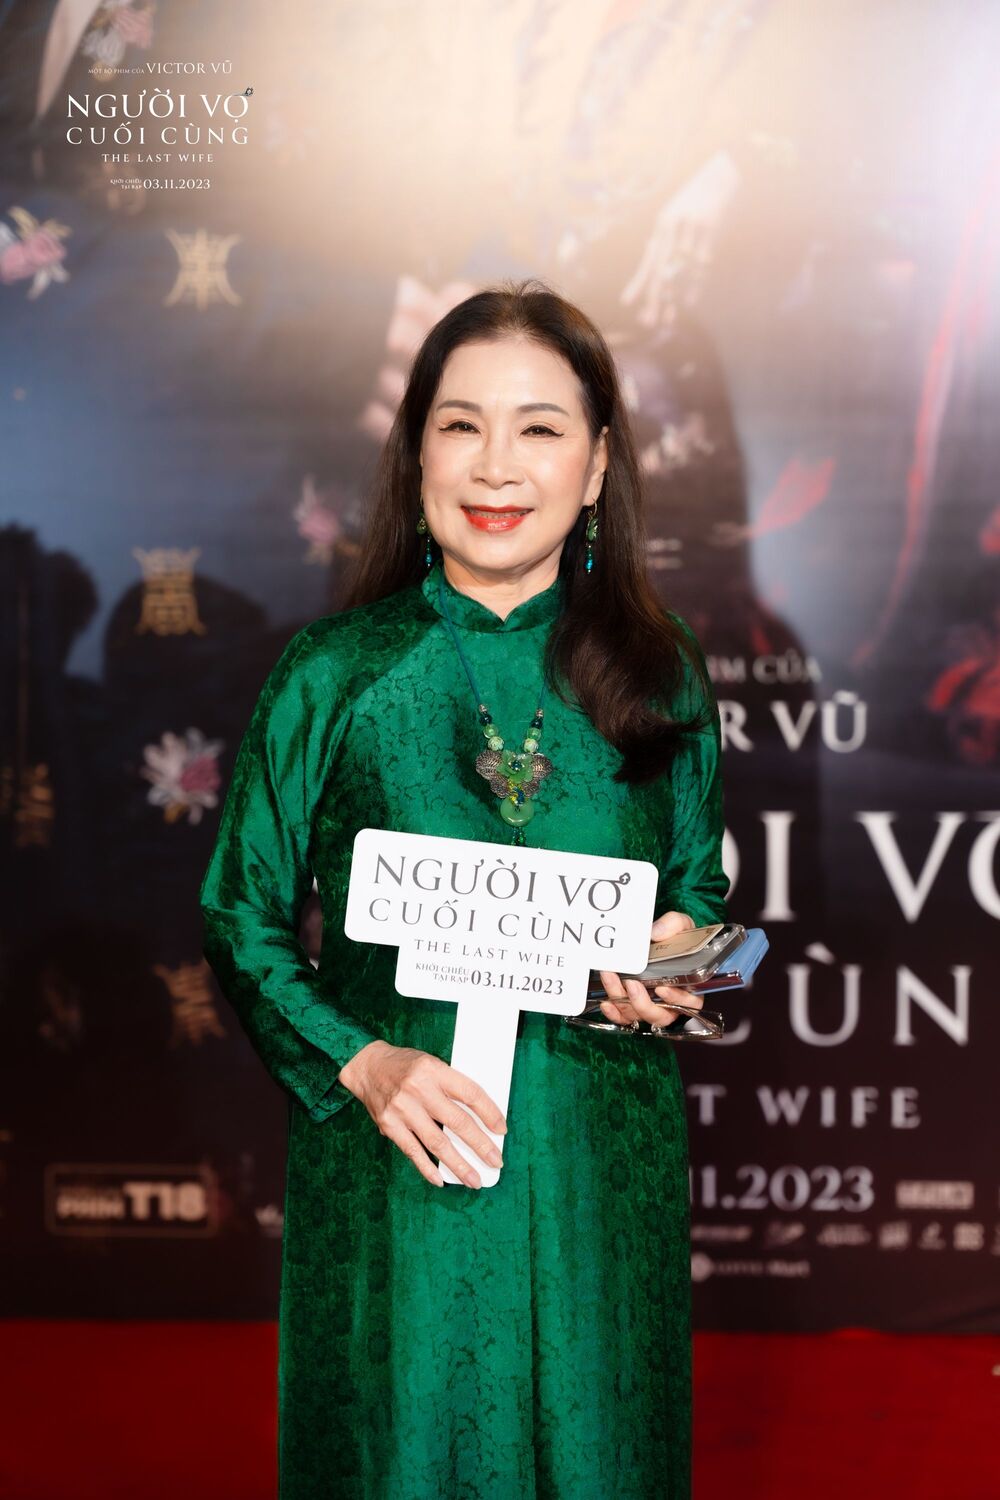 Hoa hậu Thùy Tiên khoe vai trần, Thanh Sơn - Khả Ngân sánh đôi trên thảm đỏ "Người vợ cuối cùng" - 6